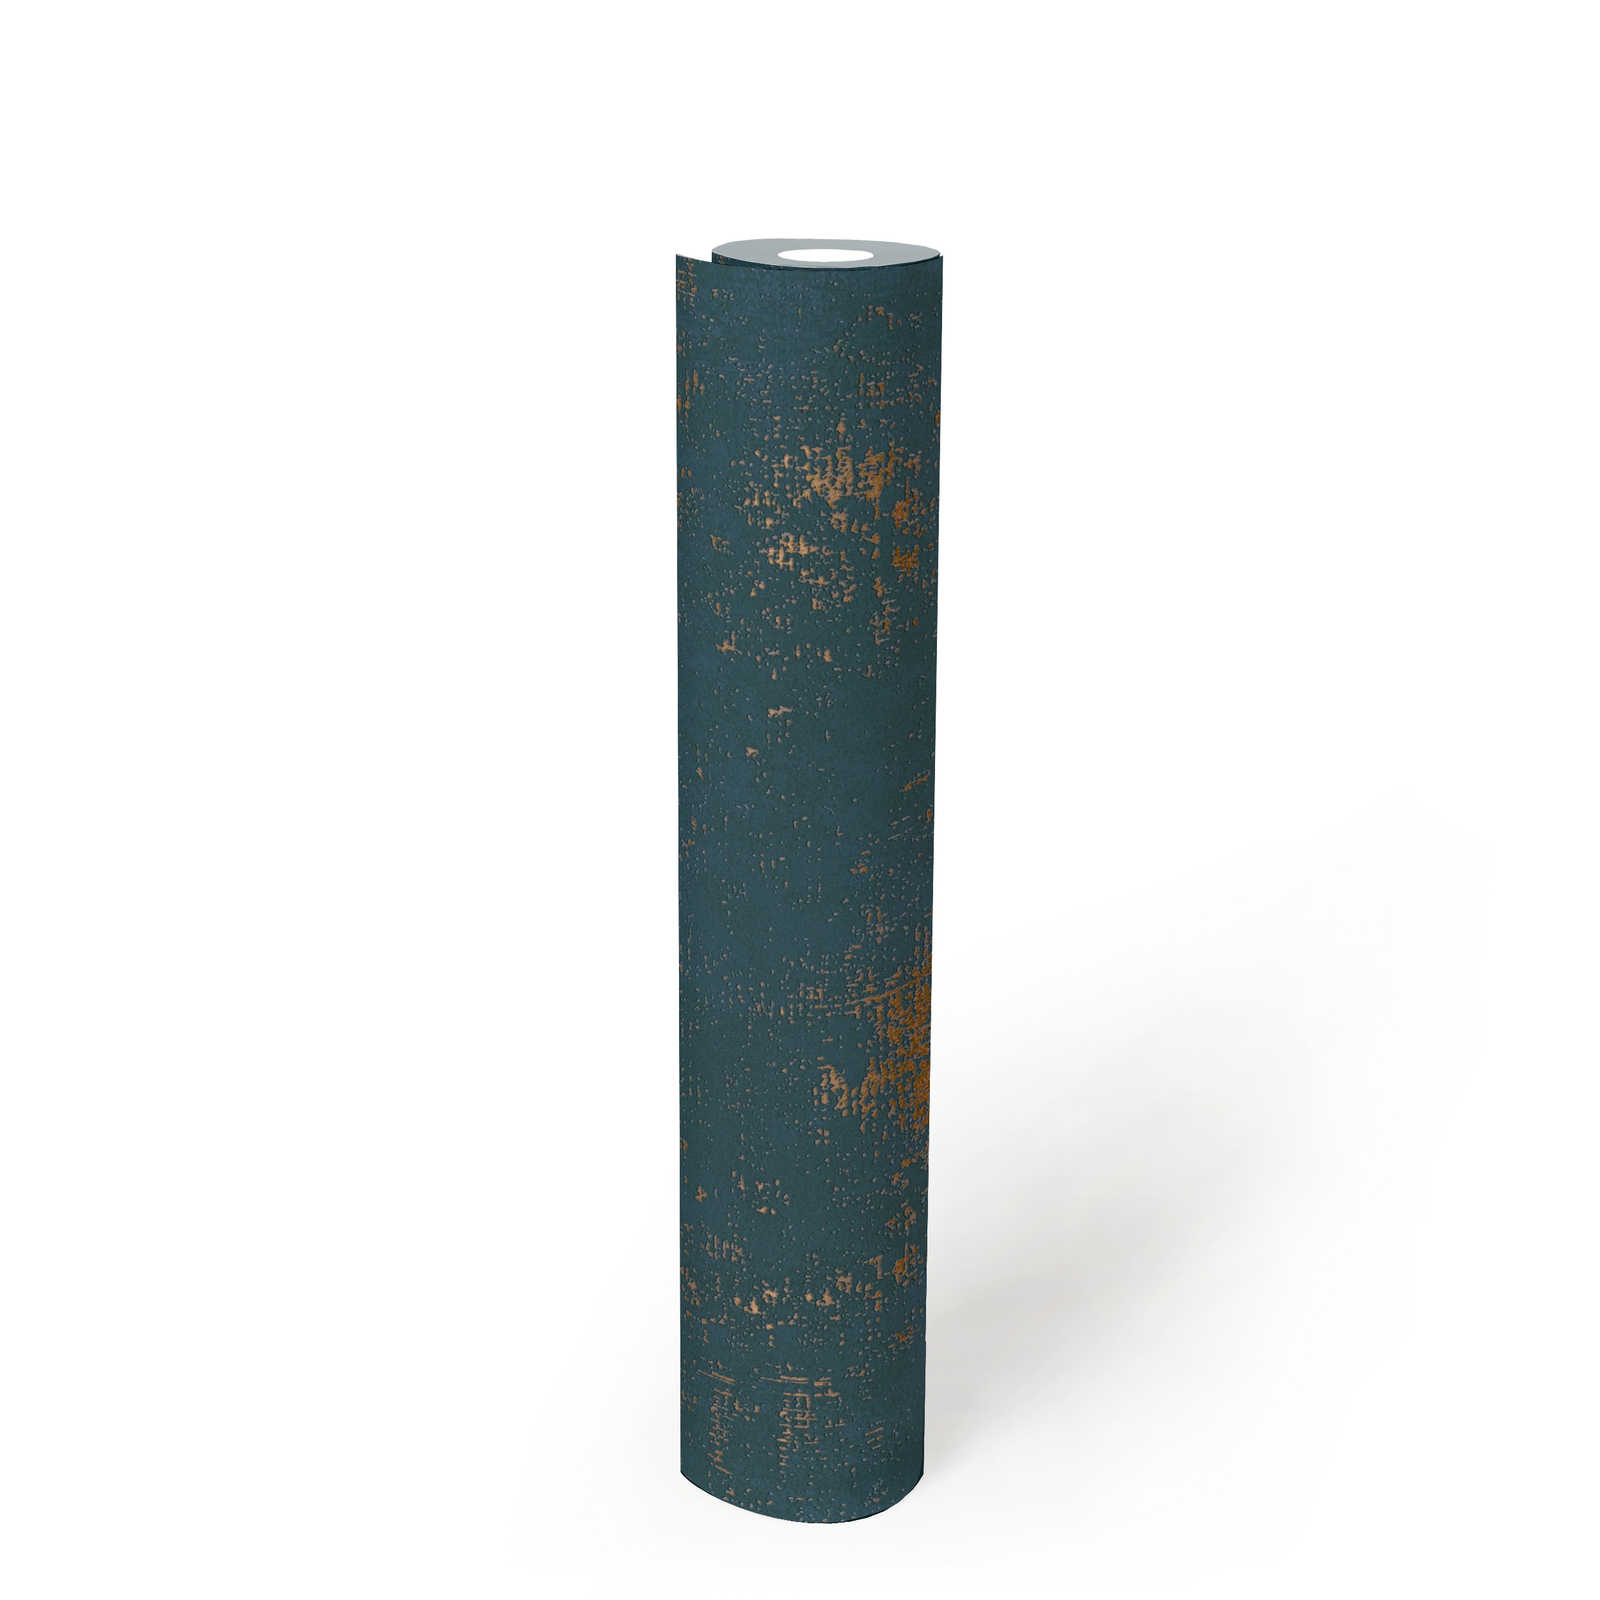             Papier peint bleu avec accent métallique doré et détails structurés
        